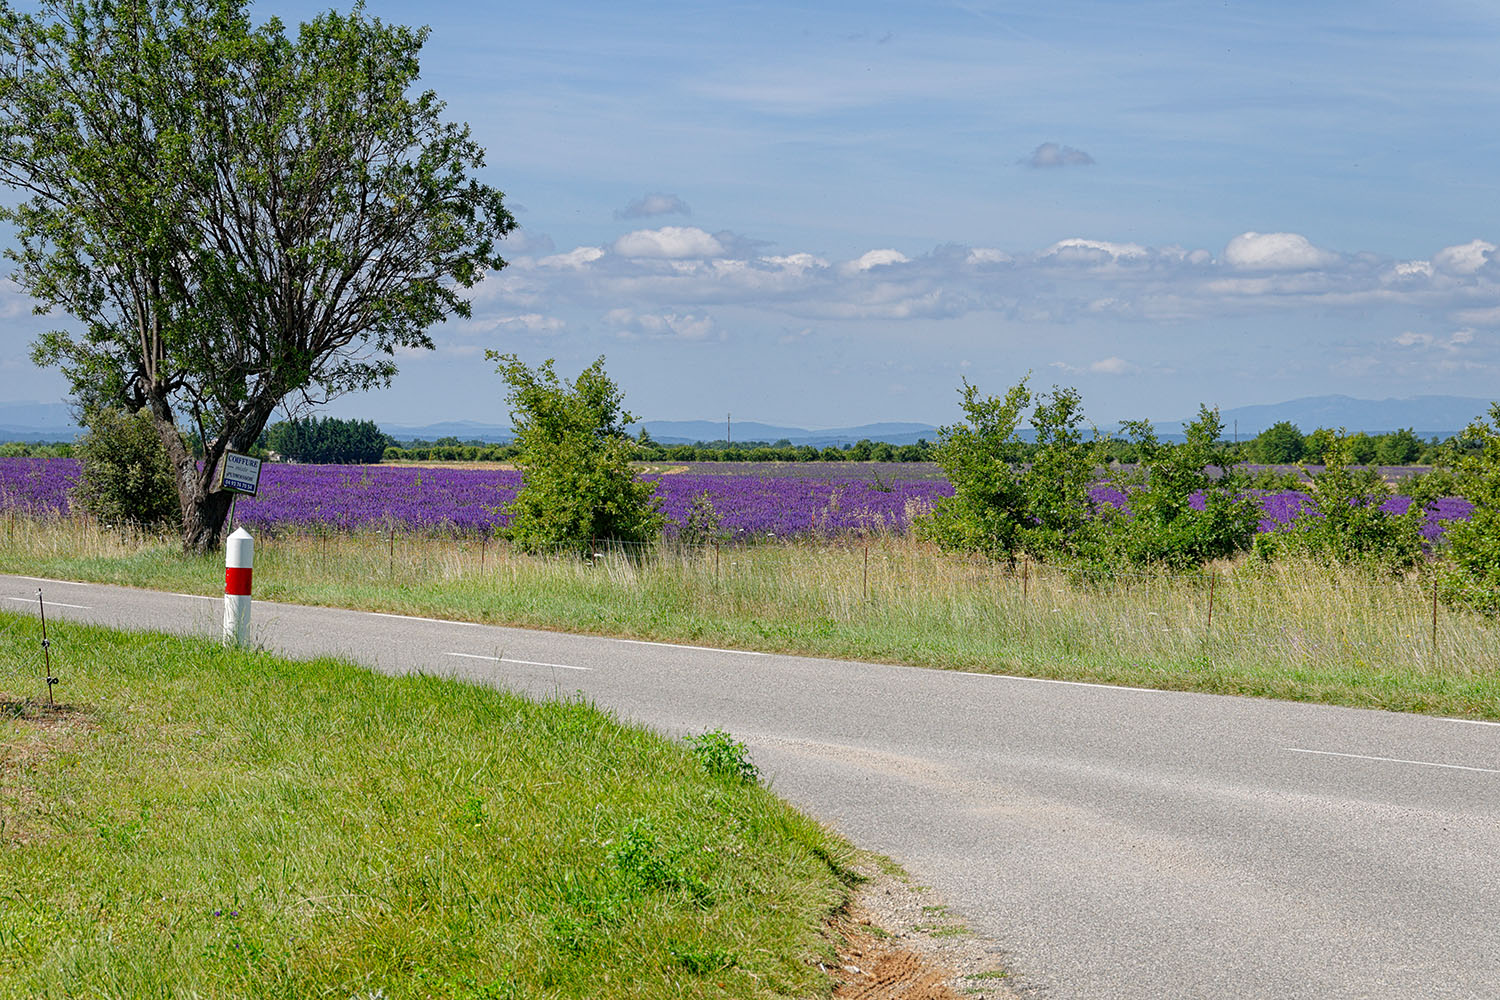 The lavender fields look like purple carpets in the landscape.